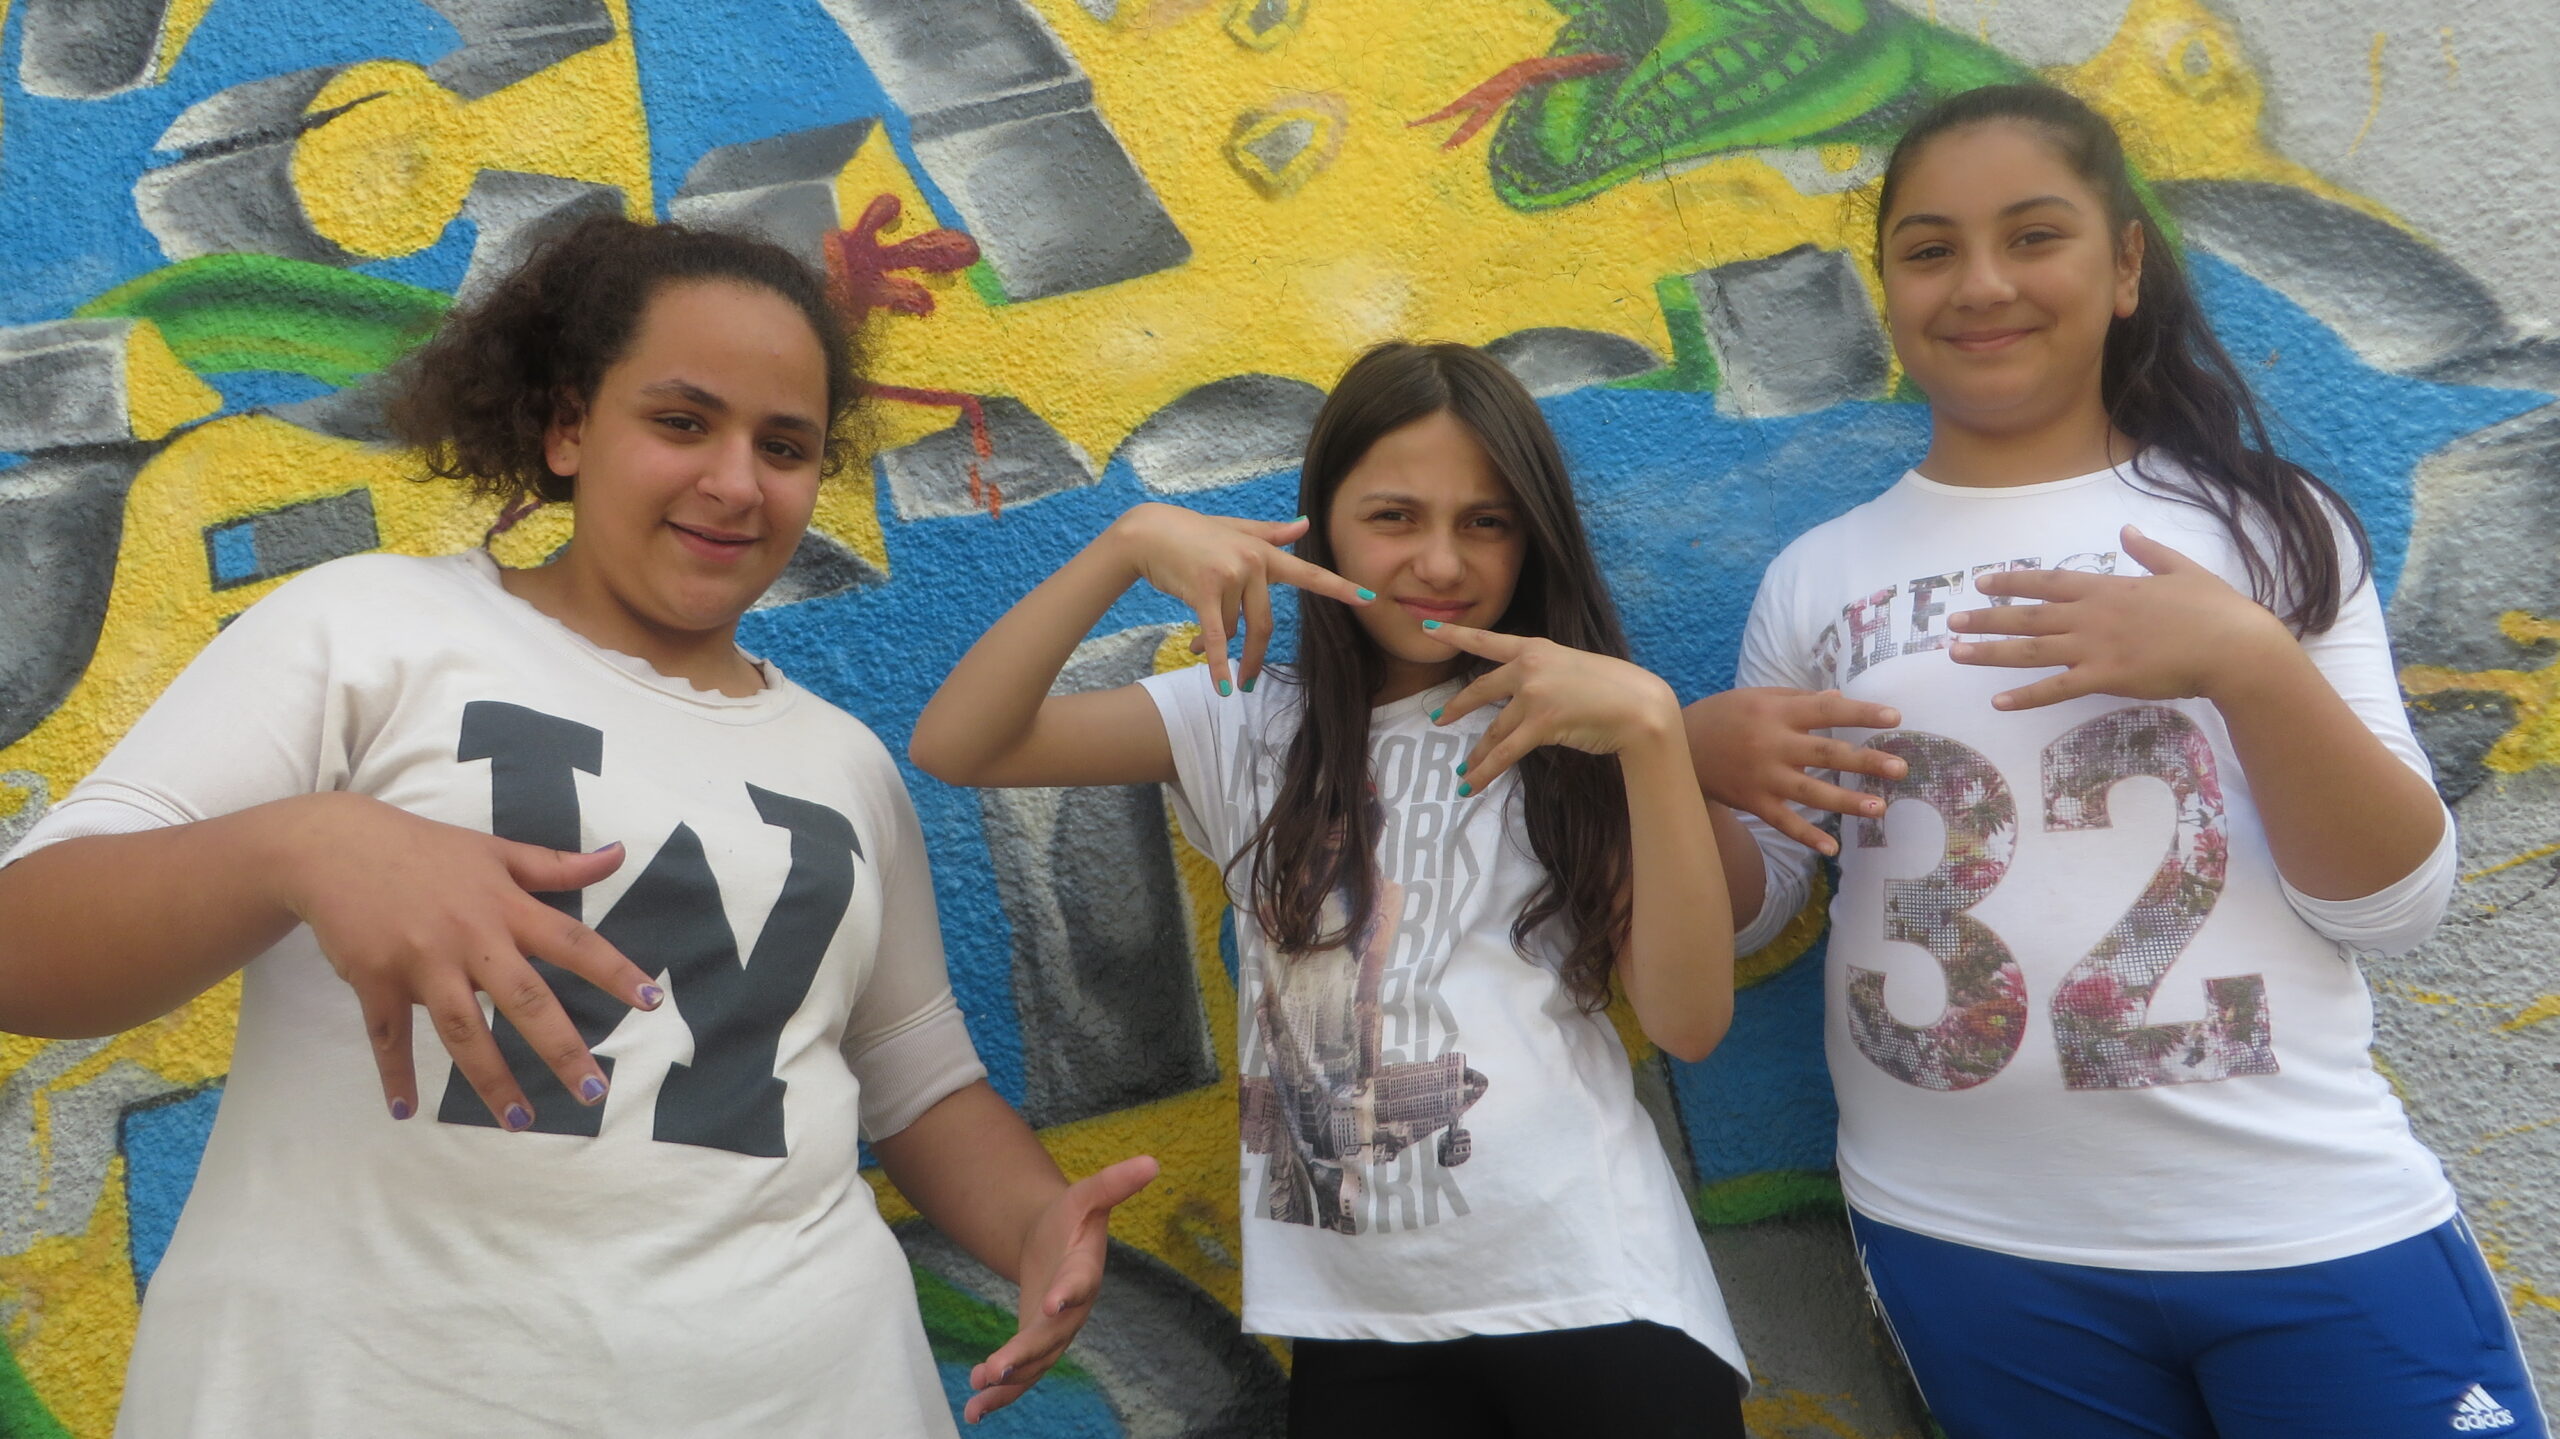 Drei Mädchen stehen in coolen Posen vor einer Graffiti-Wand.